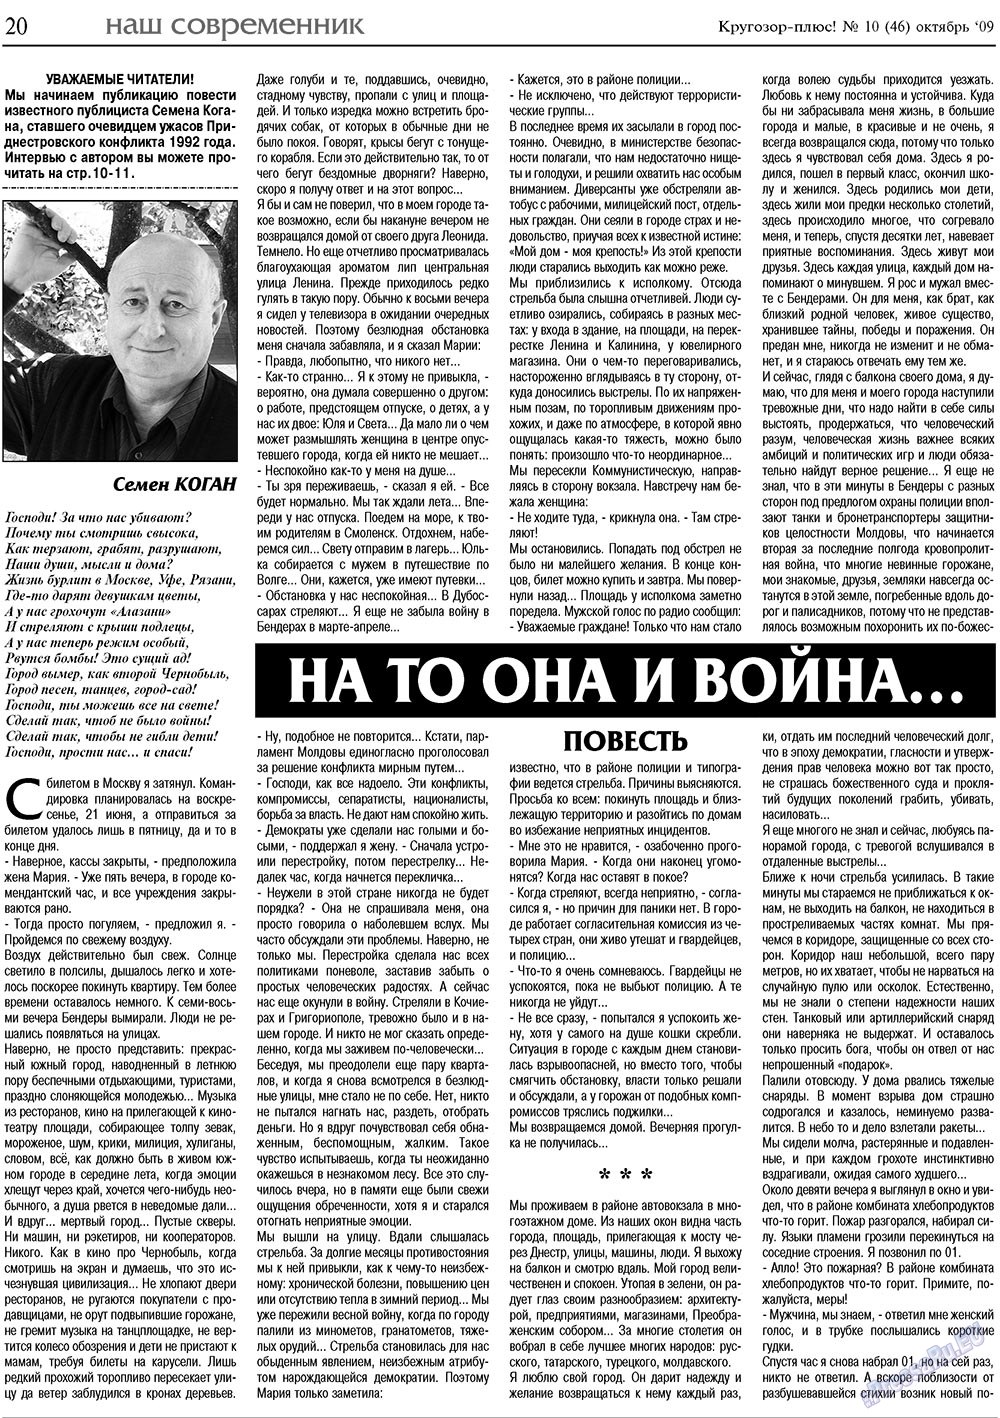 Кругозор плюс!, газета. 2009 №10 стр.20